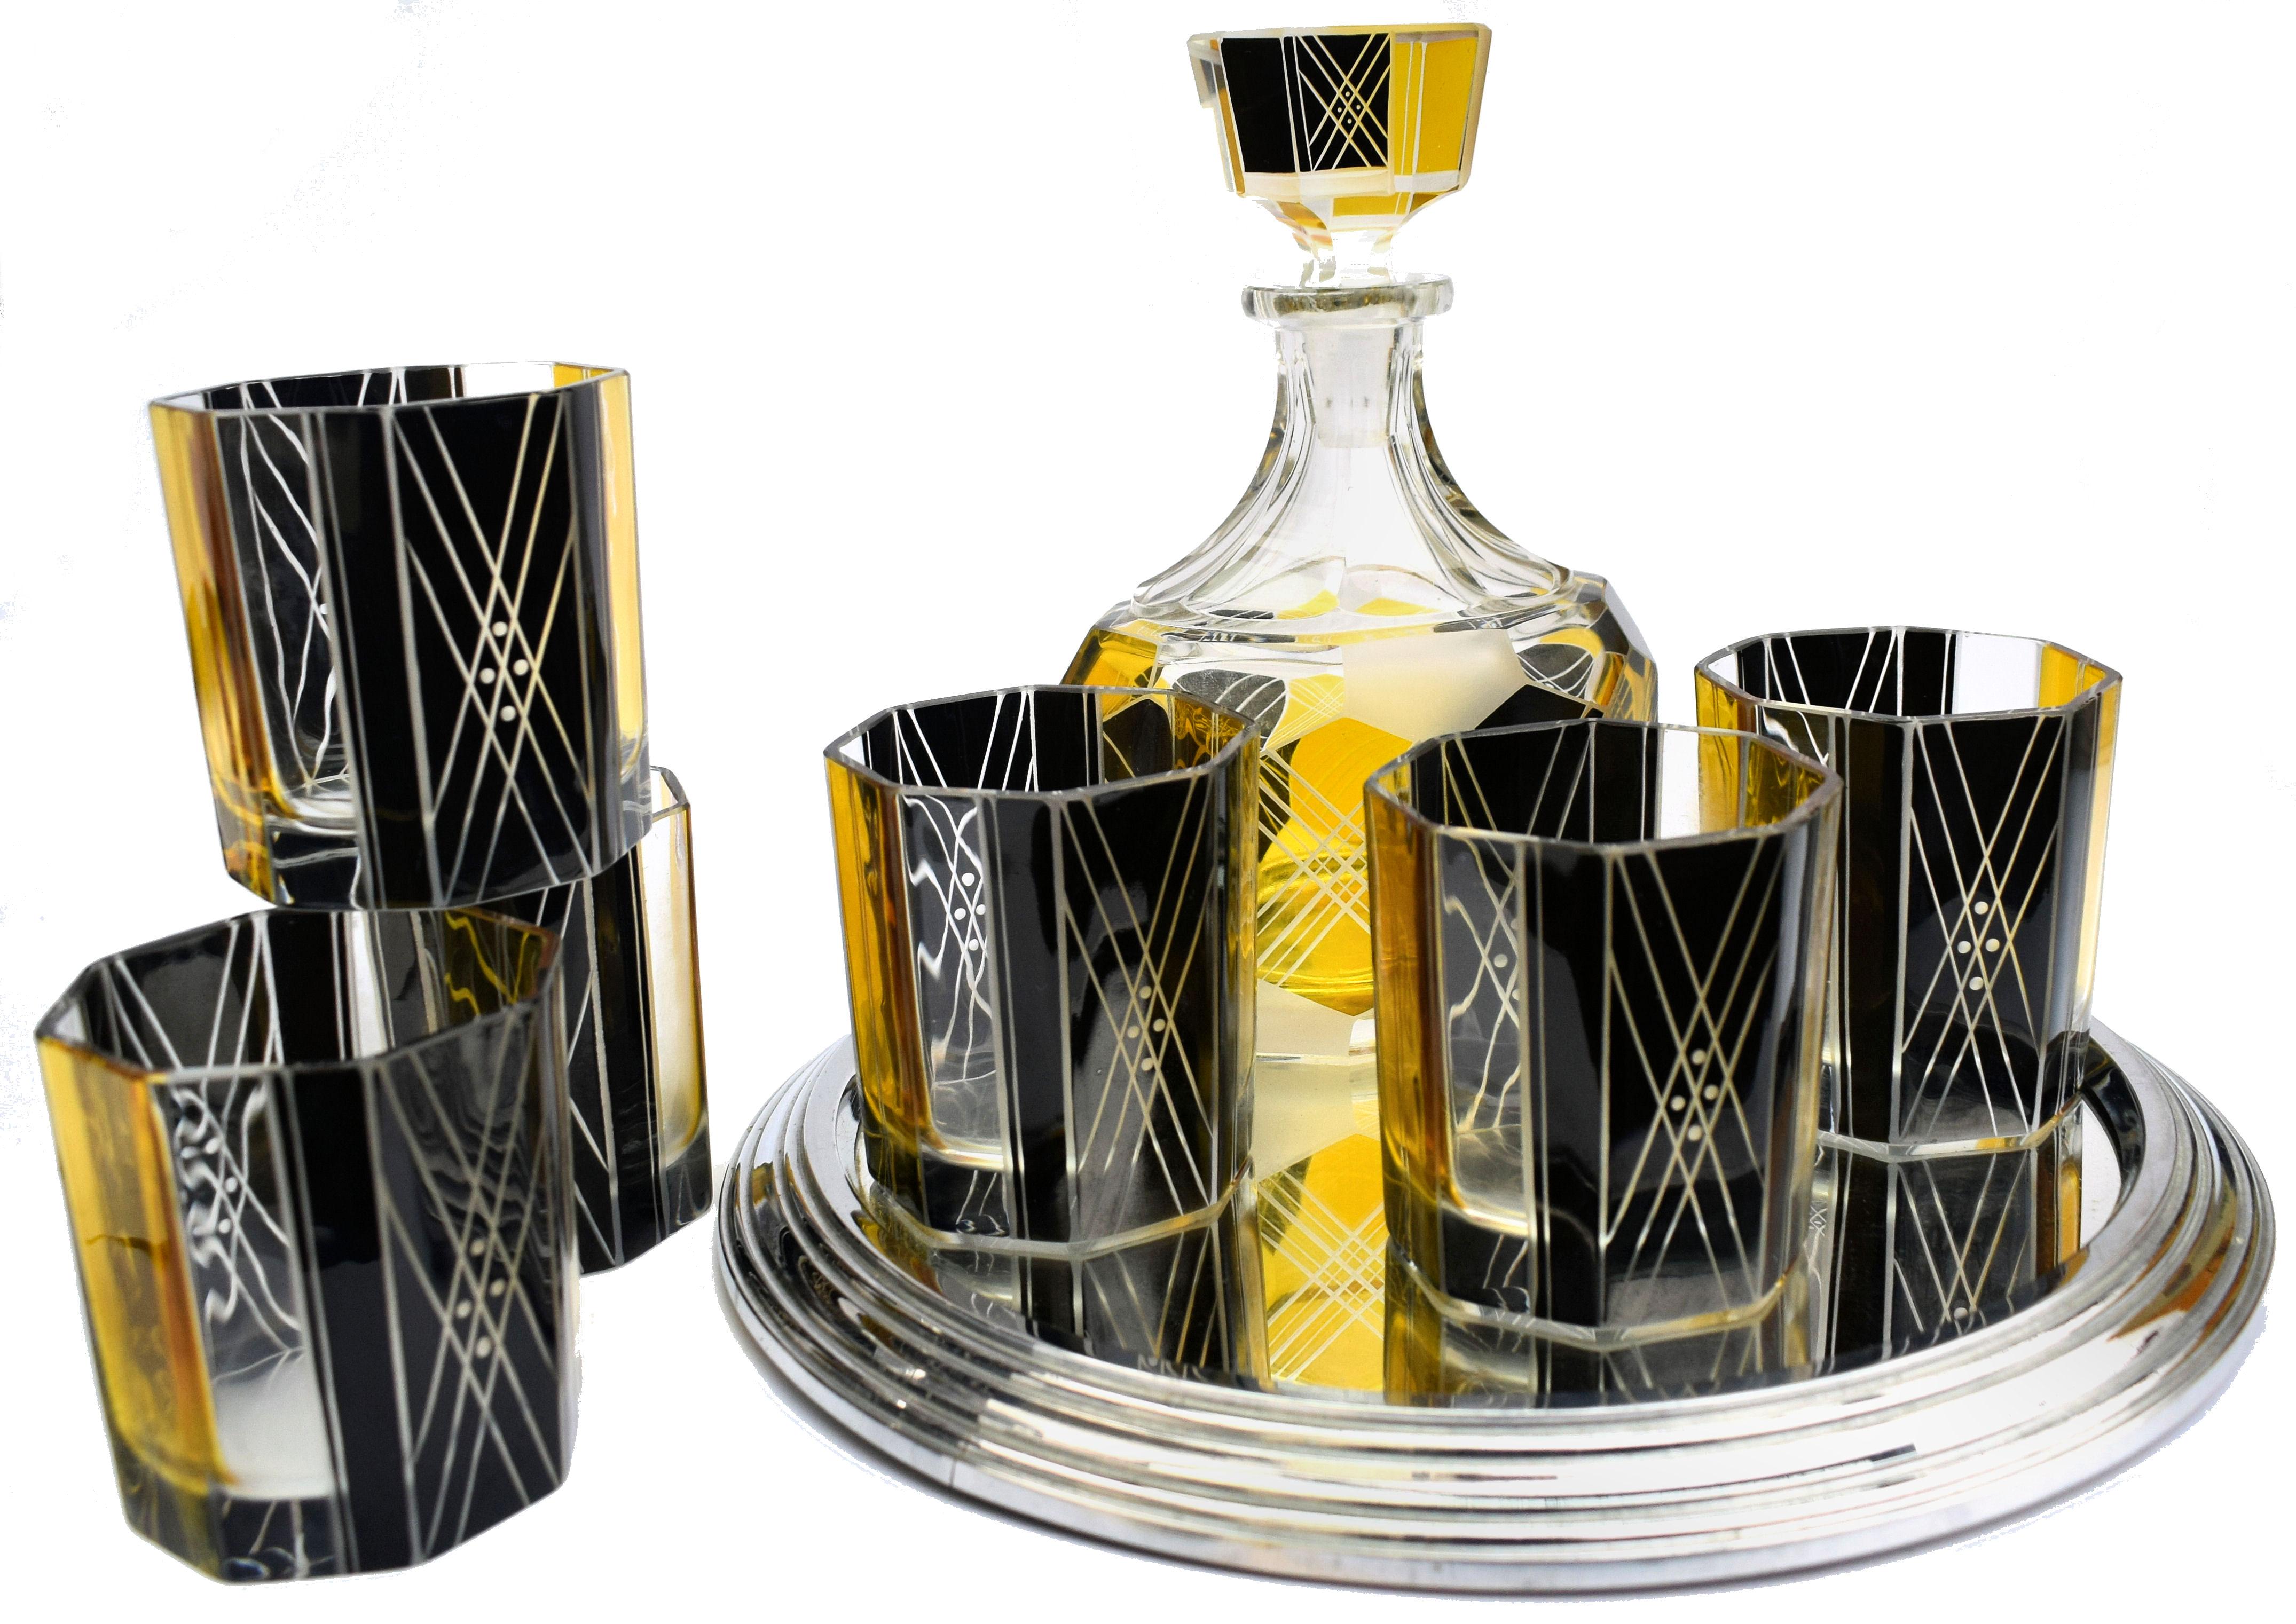 Ensemble de carafes en verre tchèque Art déco des années 1930 de très haute qualité et d'un aspect très frappant. Comprend une carafe en cristal de forme classique avec bouchon et six gobelets en verre de taille décente. L'ensemble est émaillé en